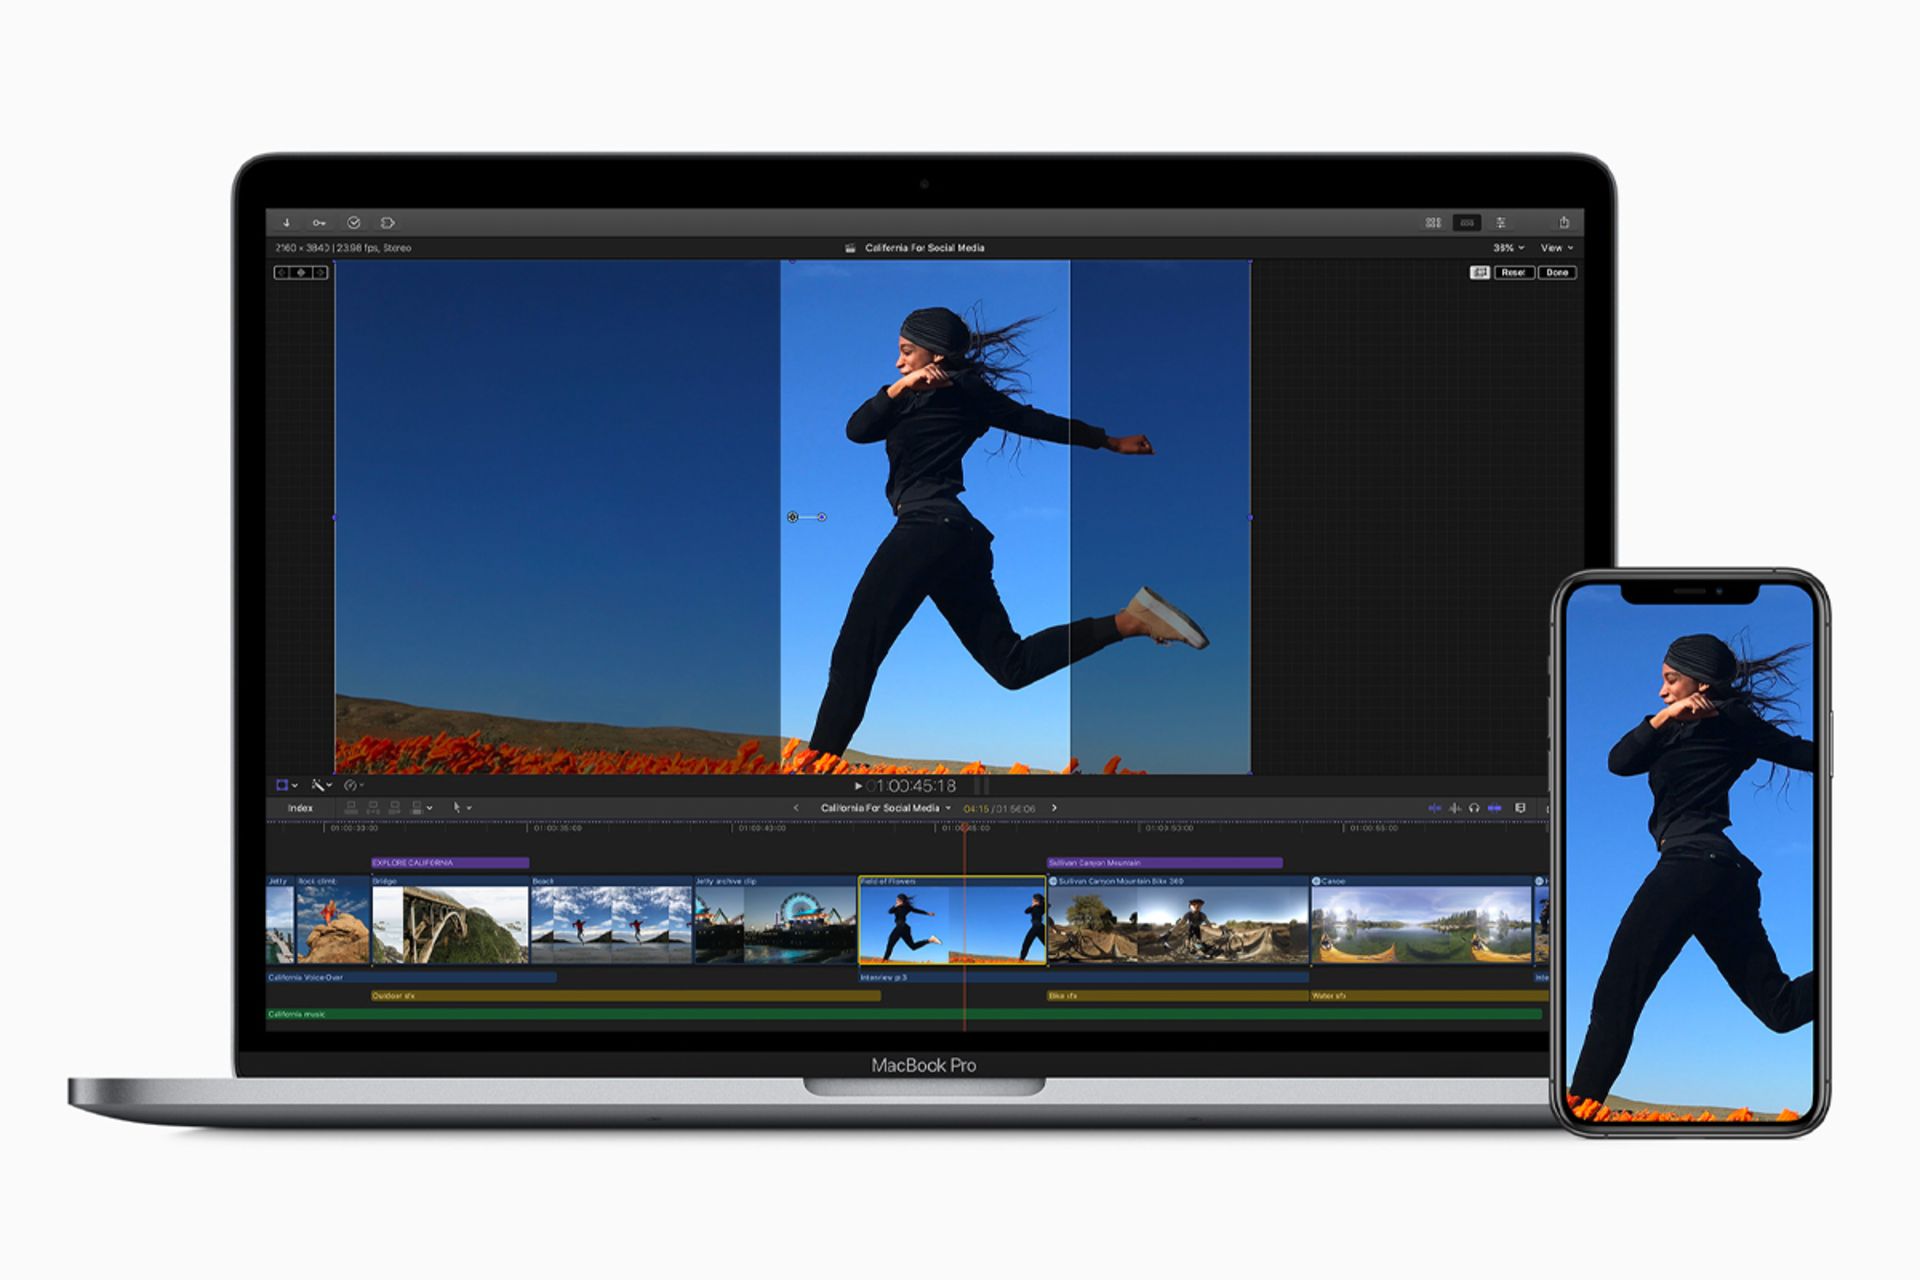 مک بوک و آیفون اپل درحال اجرای فاینال کات پرو ایکس / Final Cut Pro X